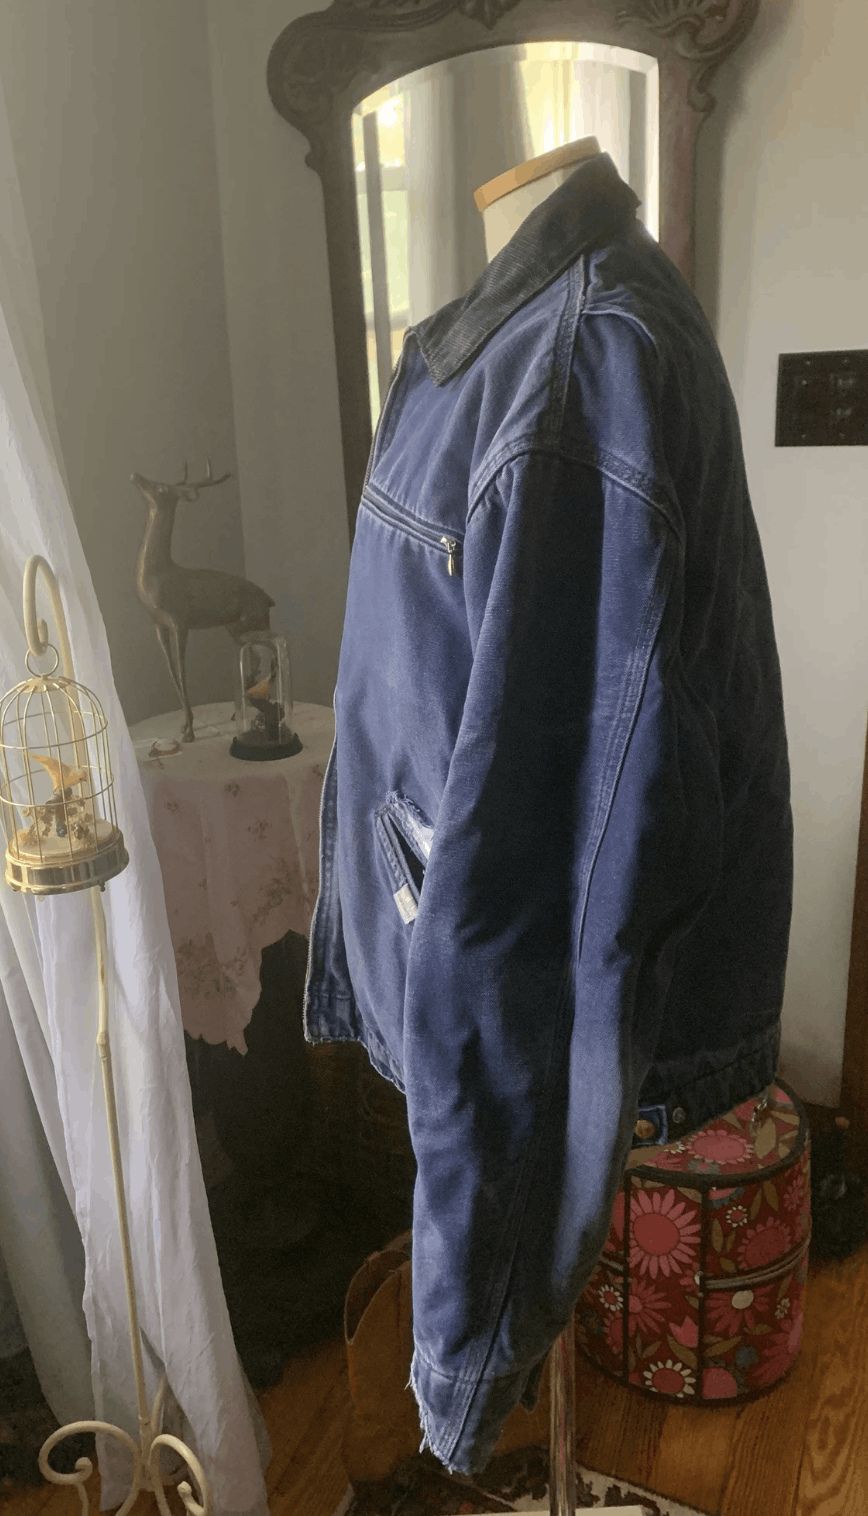 Carhartt Vintage Carhartt Detroit Jacket Faded Blue Size US M / EU 48-50 / 2 - 4 Thumbnail